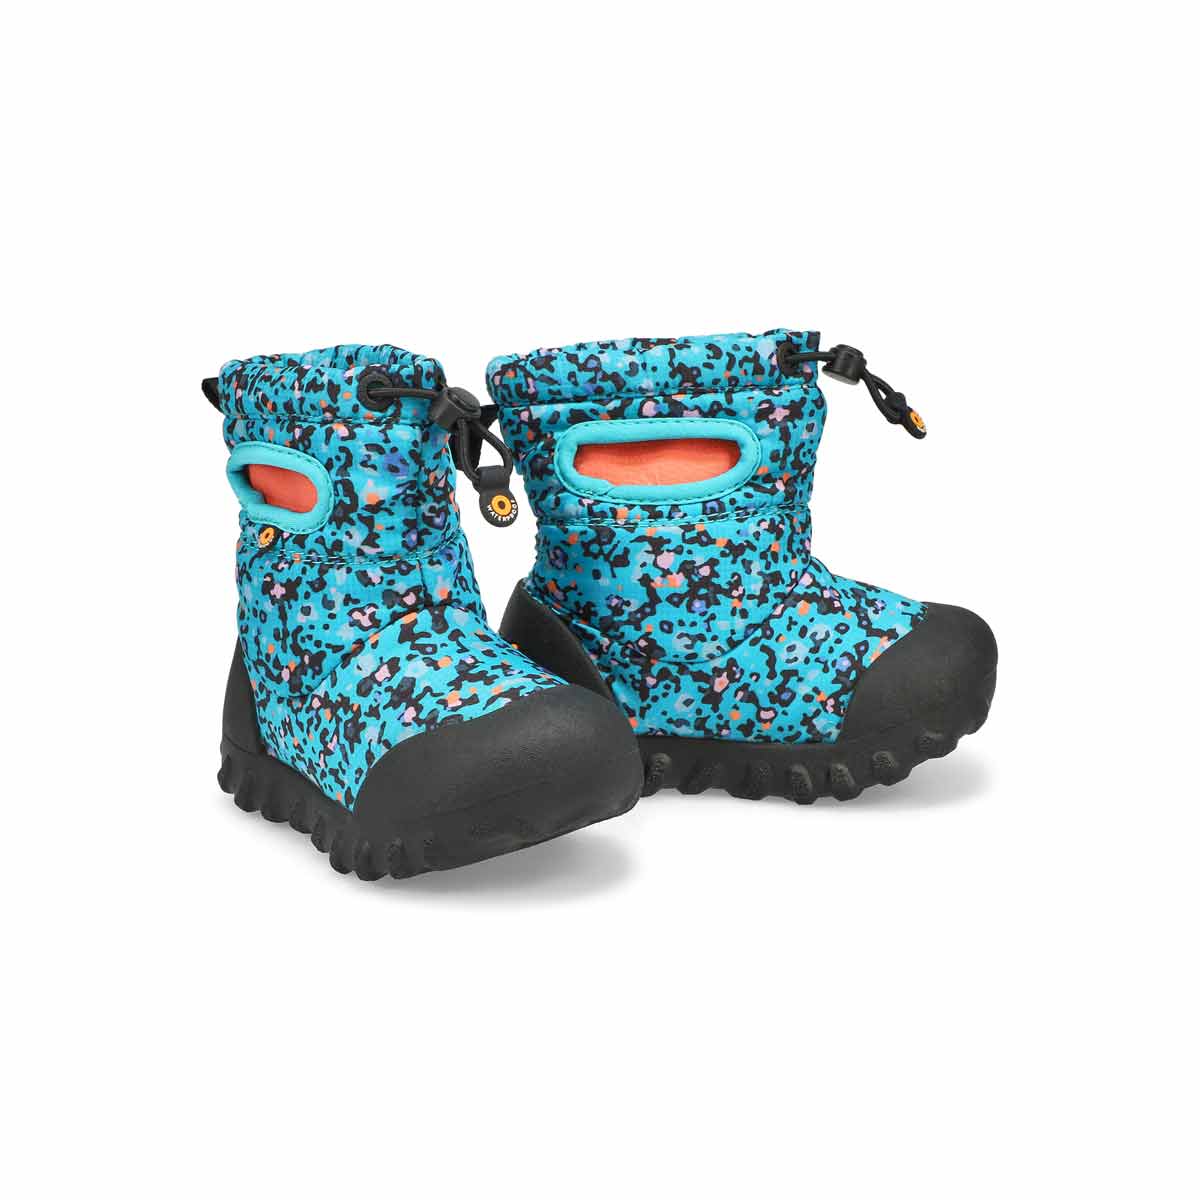 Infants' B-Moc Snow Waterproof Boot - Blue Multi